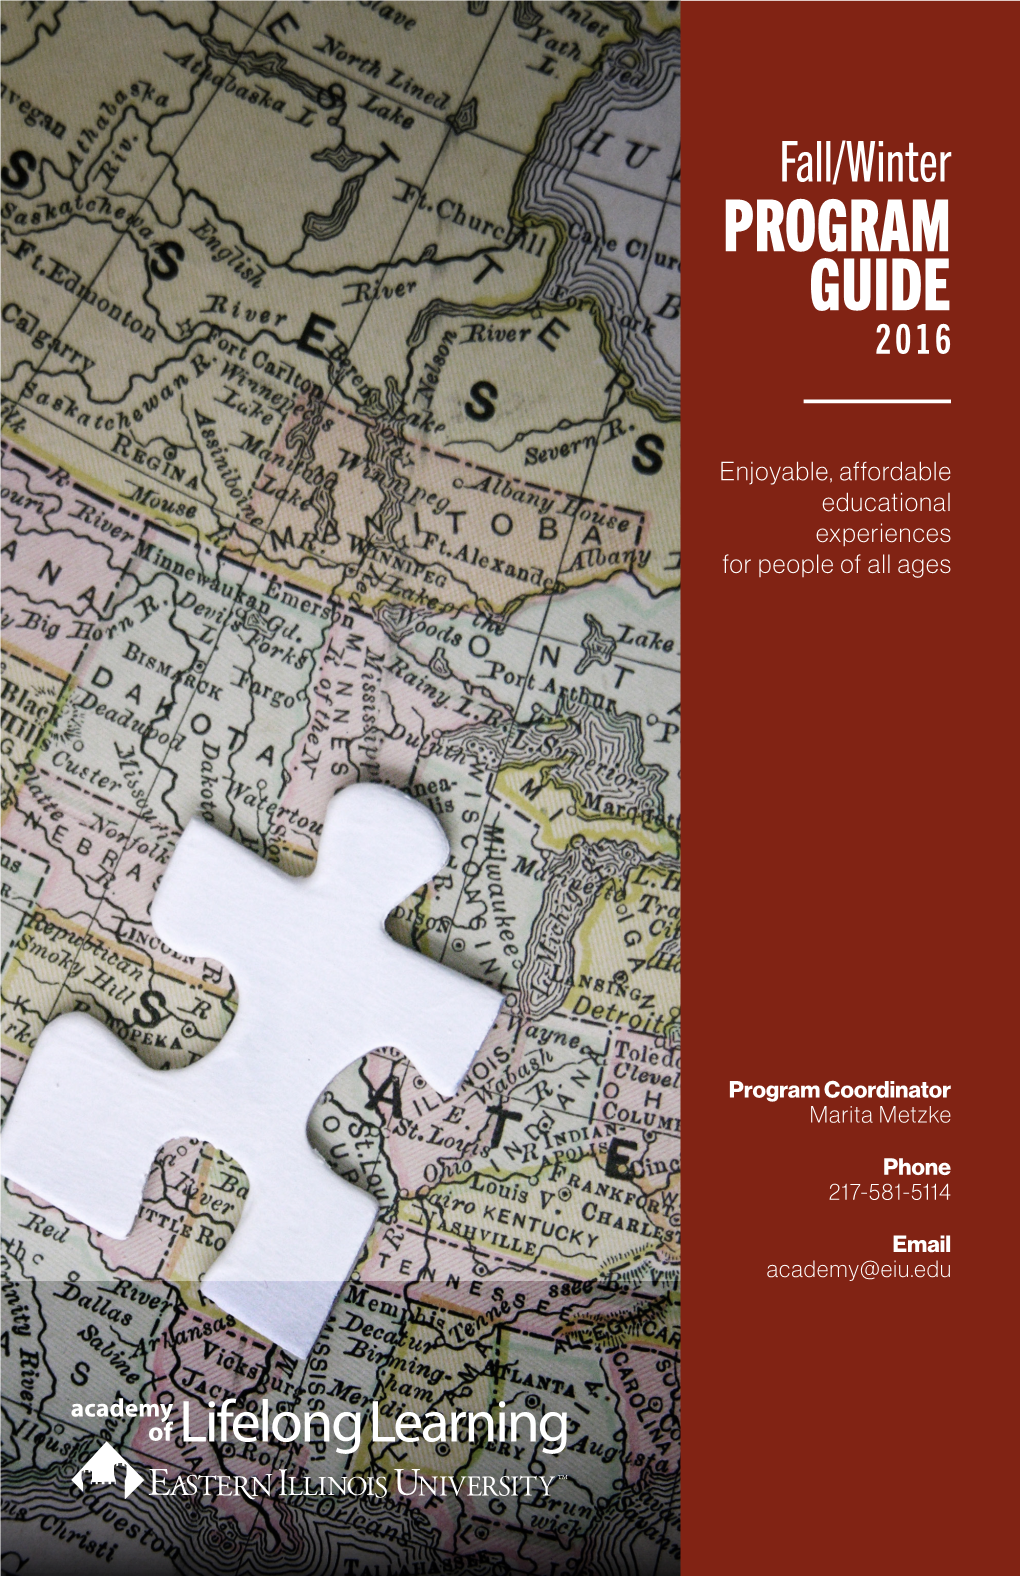 Program Guide 2016